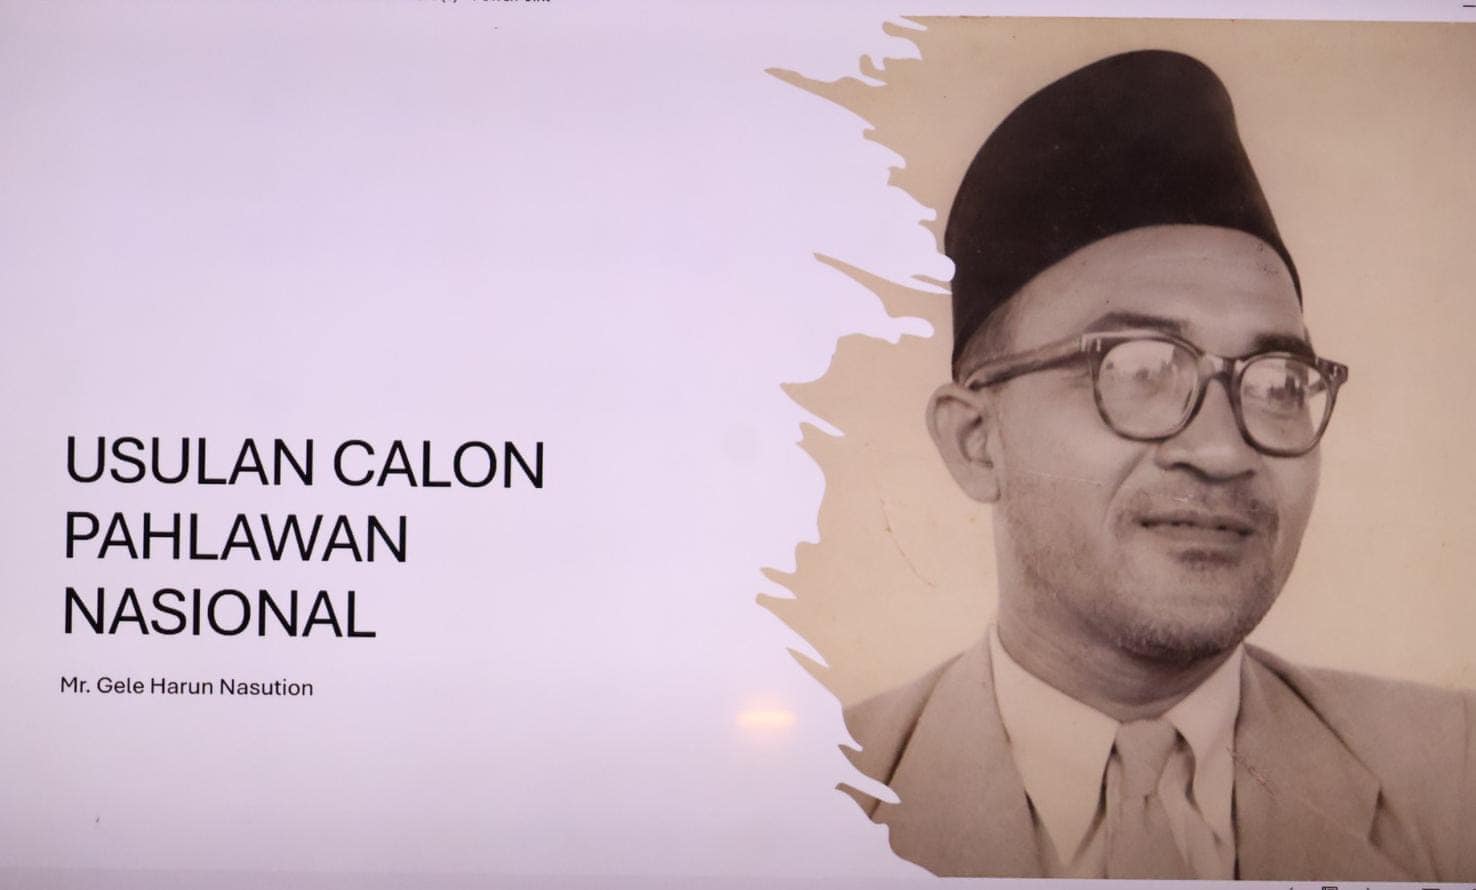 Mr. Gele Harun Nasution Diusulkan sebagai Pahlawan Nasional